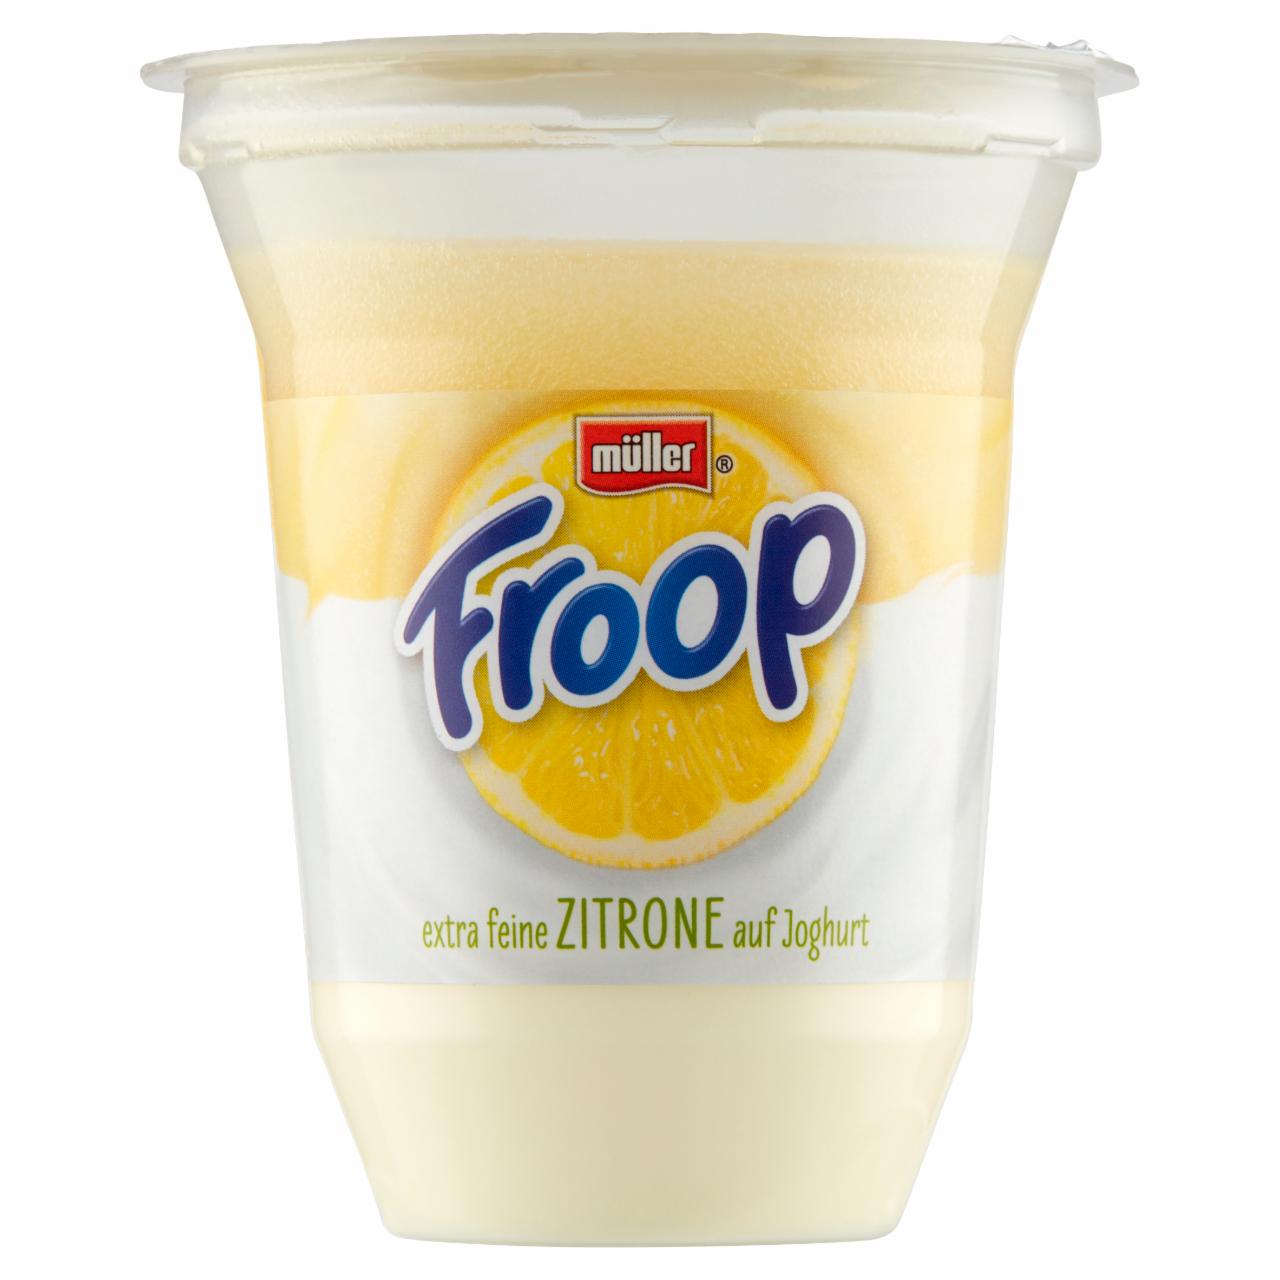 owocowym smaku kJ o mleczny na 150 kalorie, z g Froop cytrynowym jogurtu bazie - wsadem odżywcze i wartości Müller Produkt